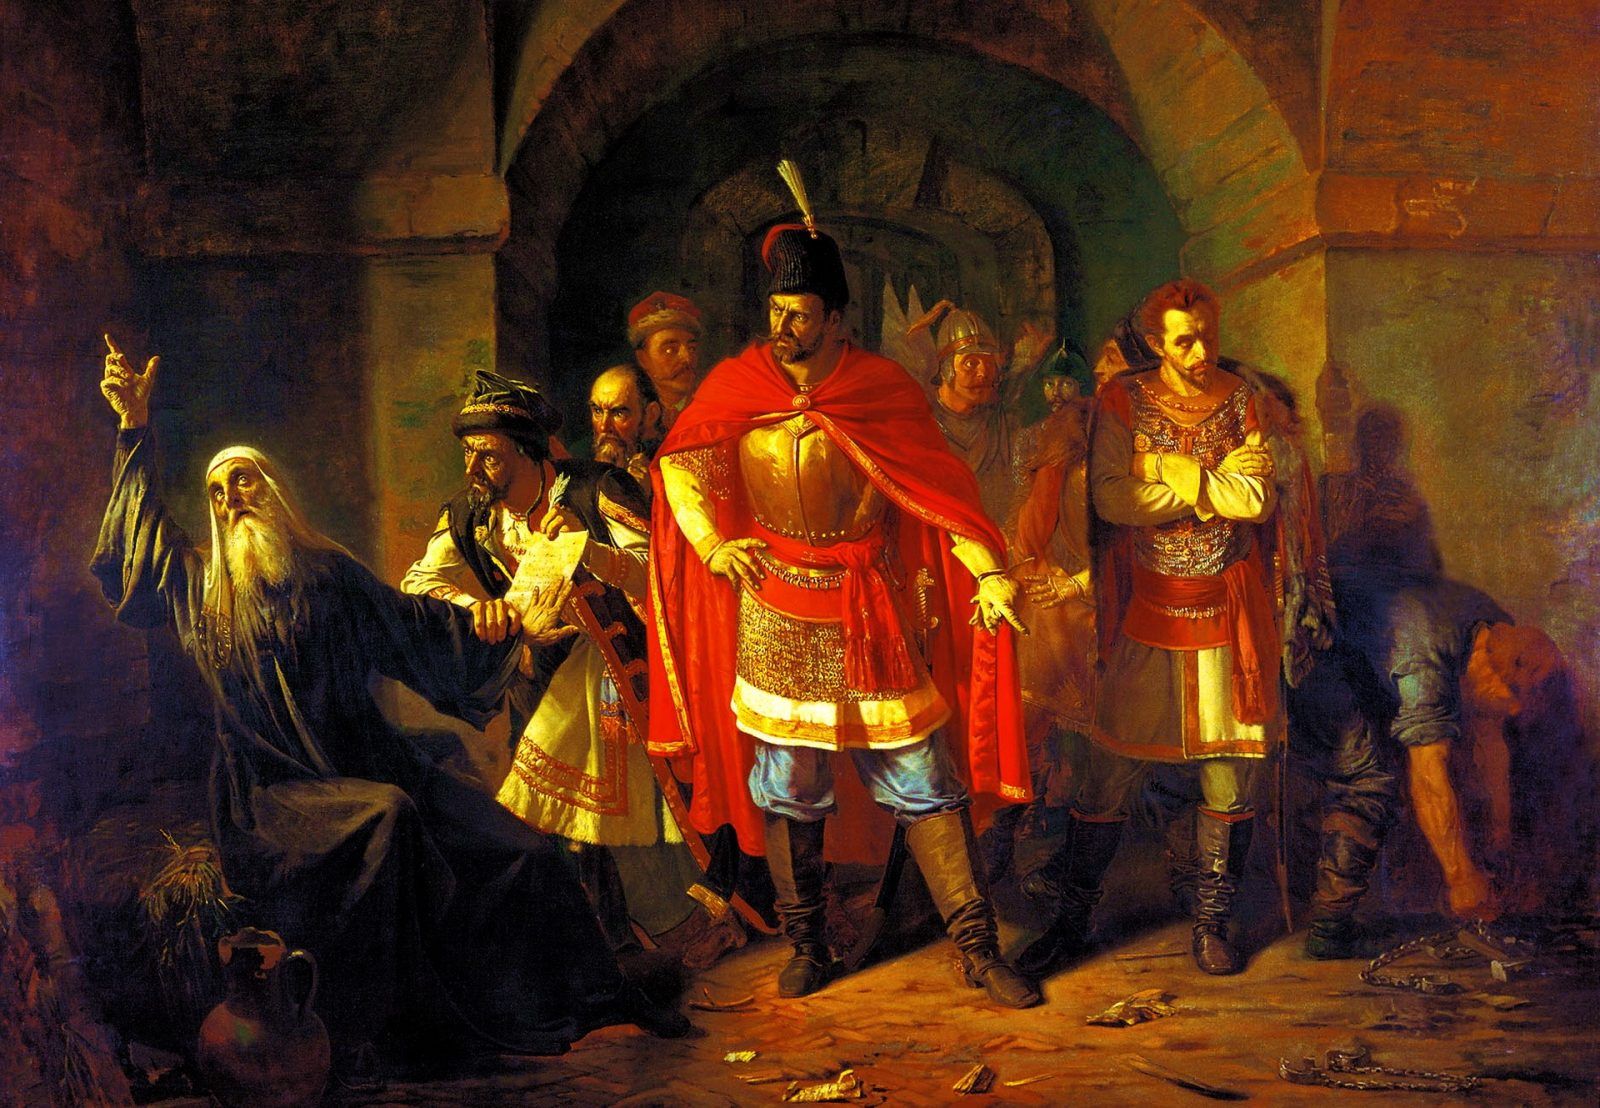 Павел Чистяков: «Патриарх Гермоген в темнице отказывается подписать грамоту поляков» (1860 г.)...